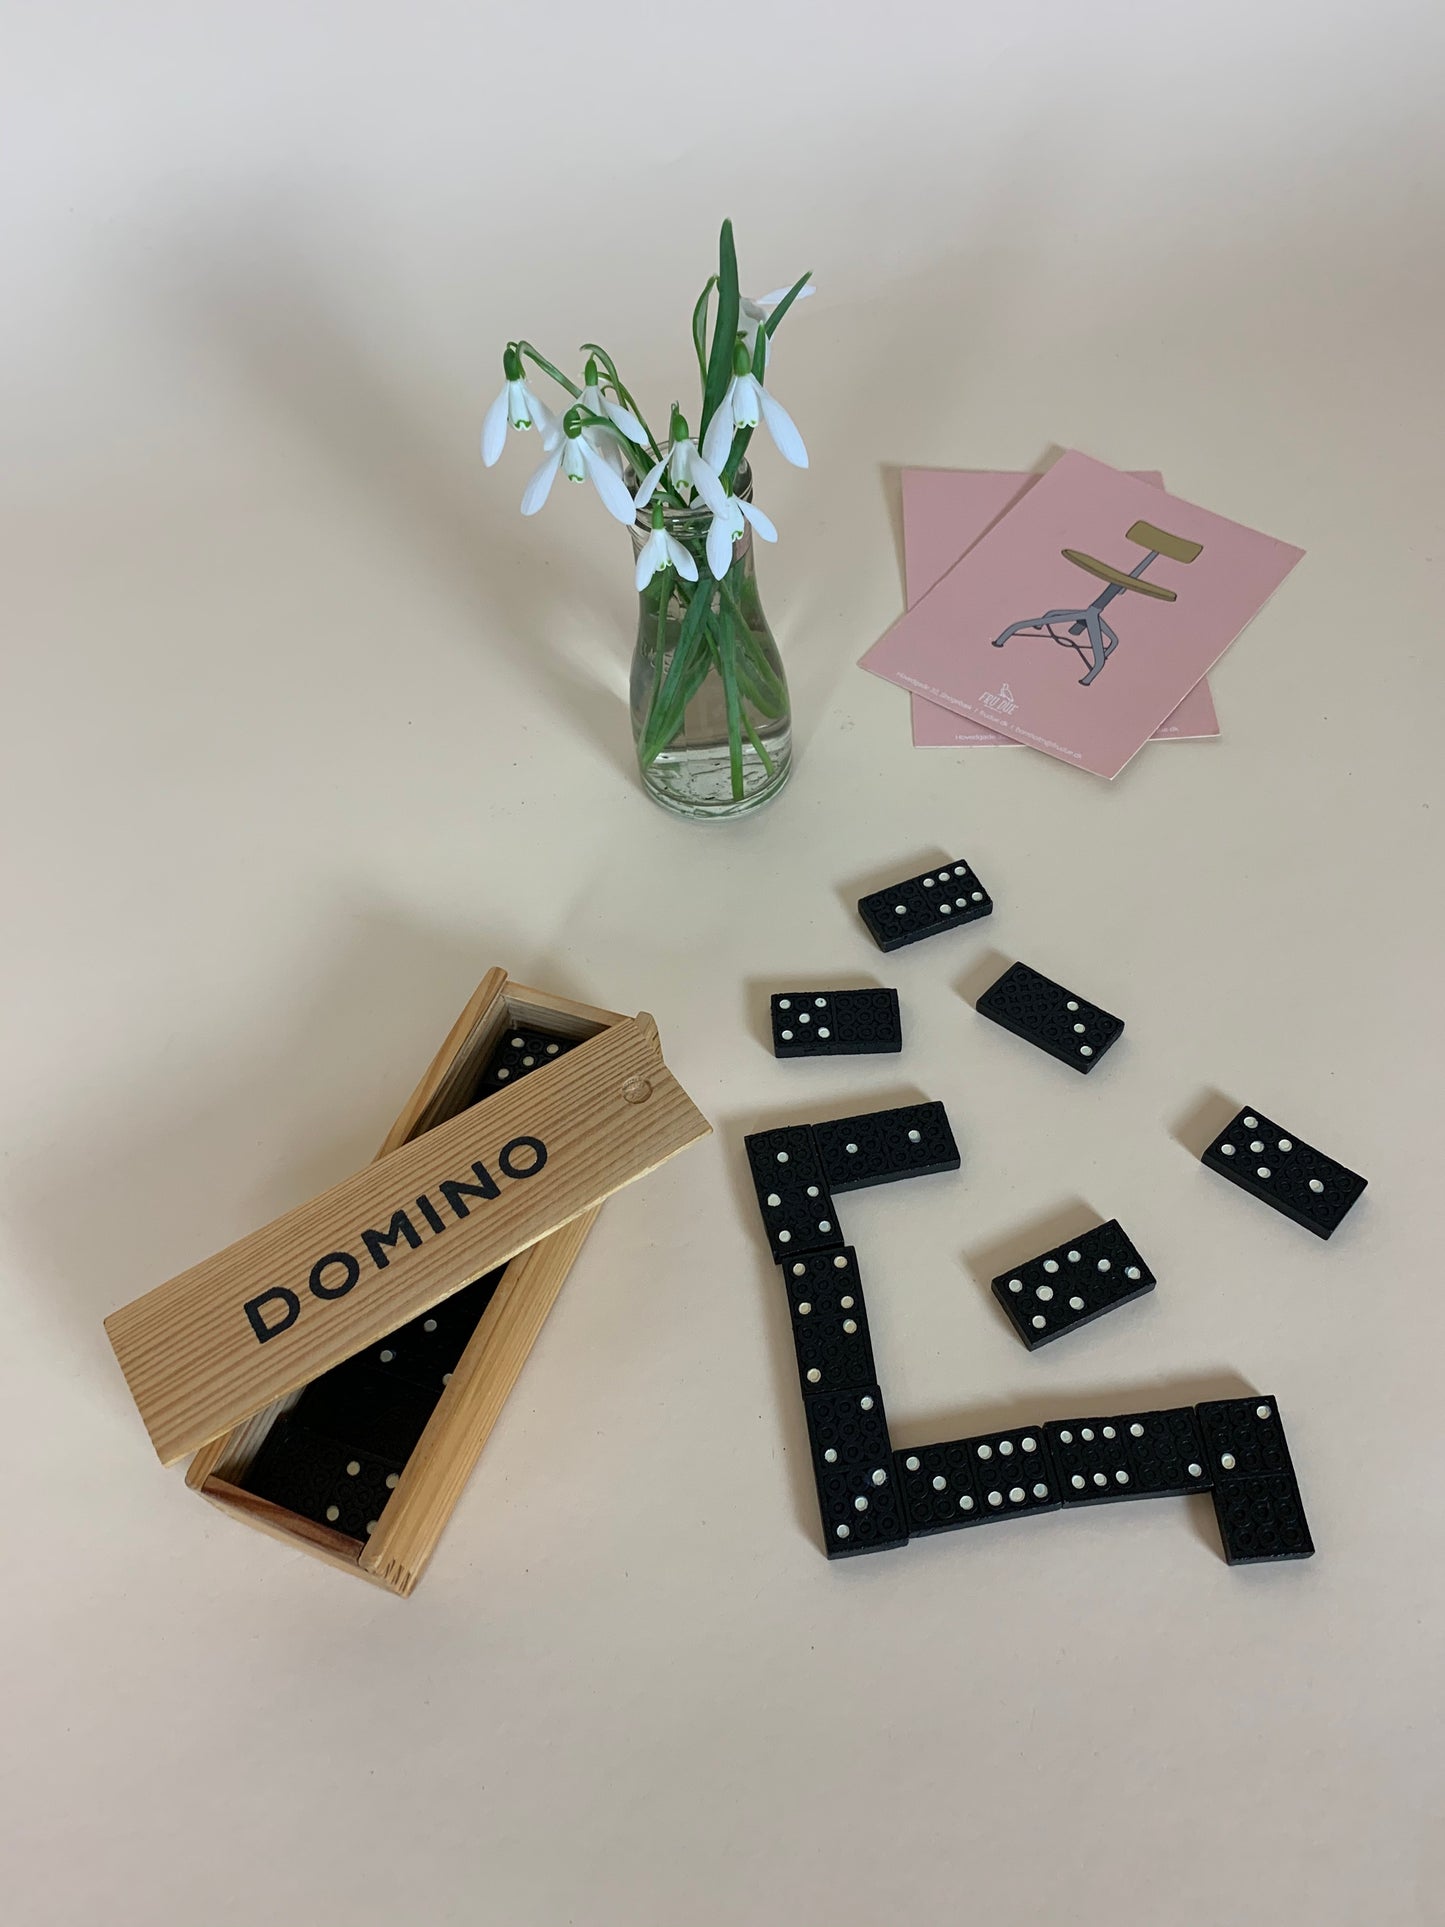 Dominospiel in Holzkiste